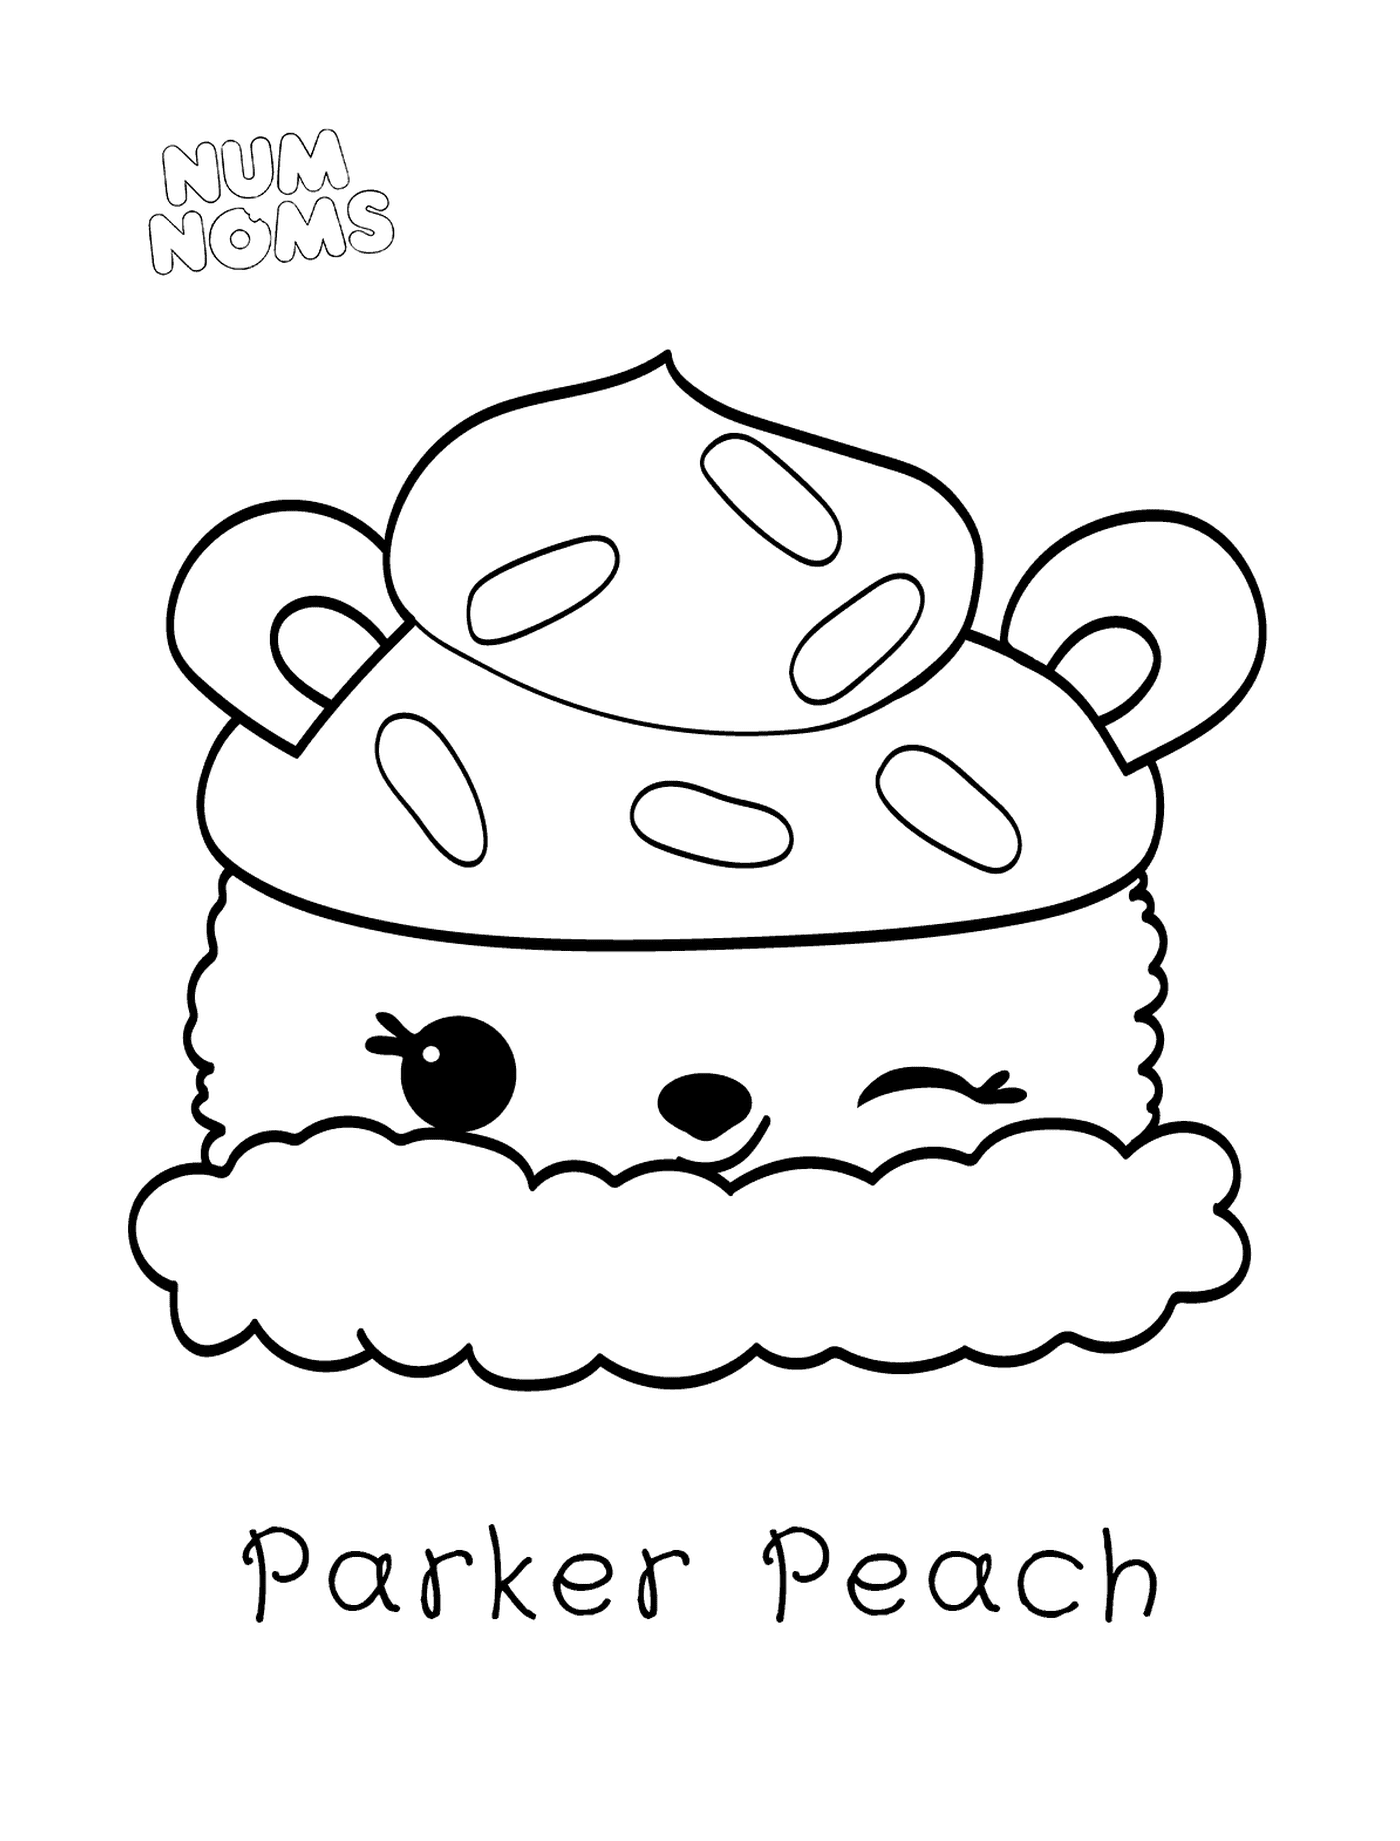  Parker Peach by Num Names 